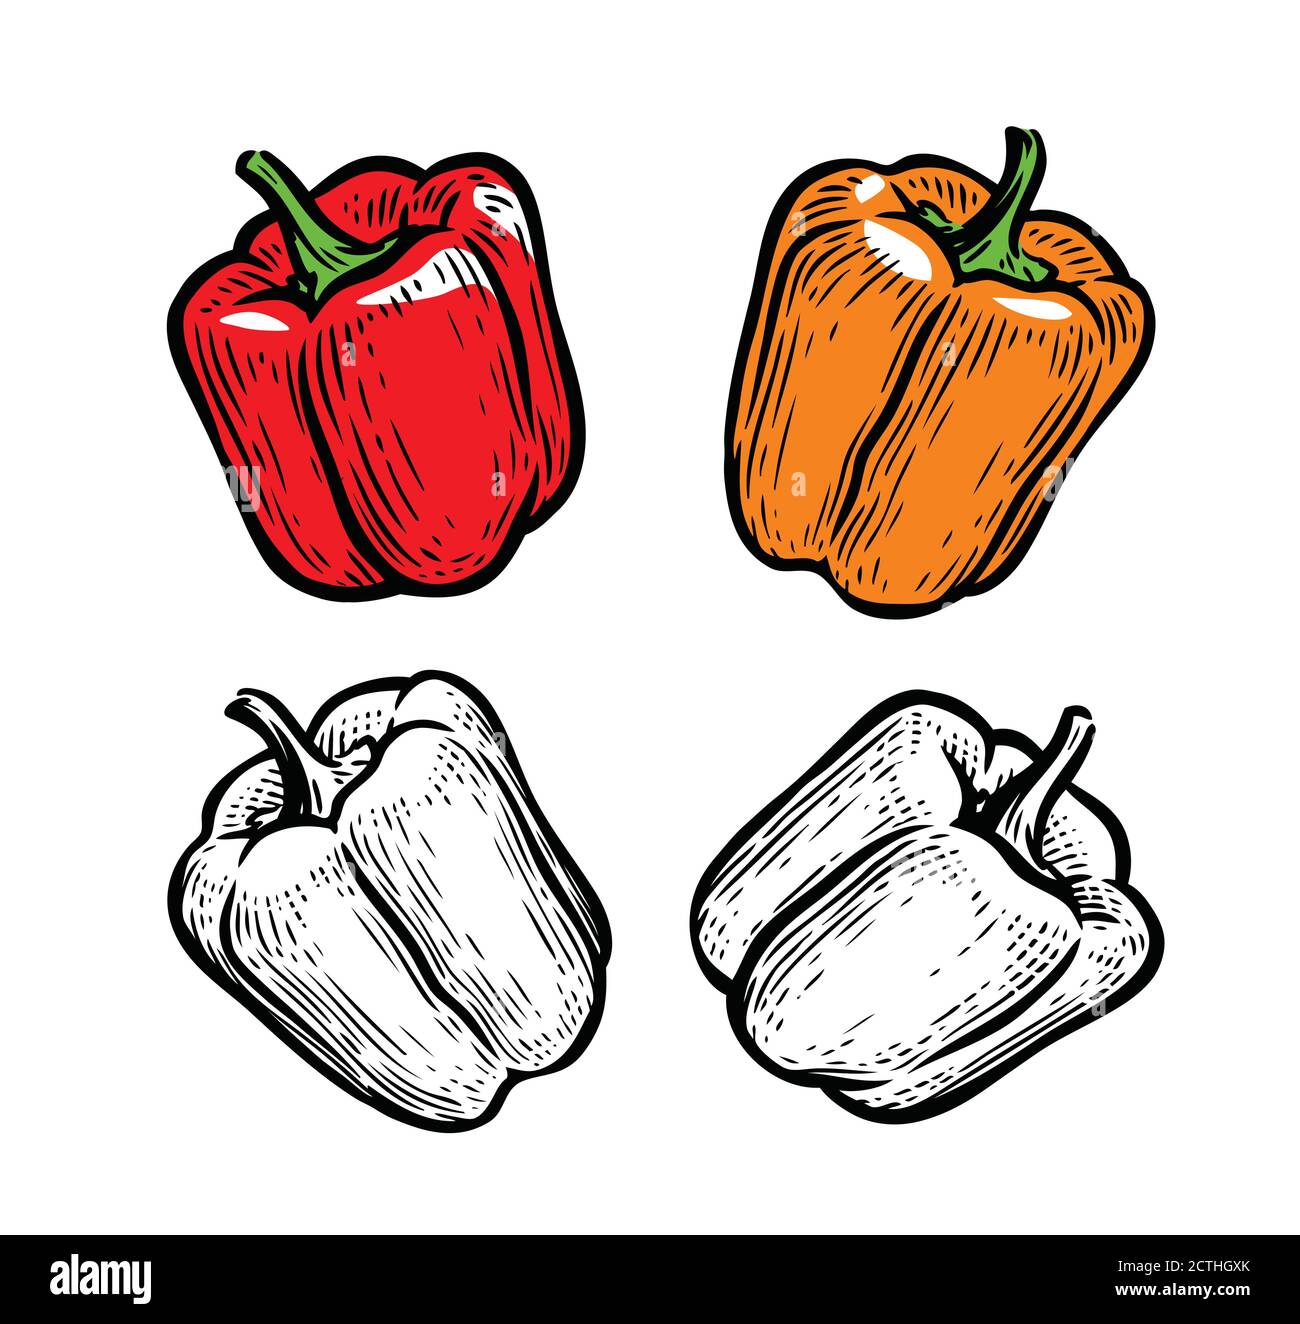 Poivre. Assaisonnement culinaire, légumes, vecteur alimentaire Illustration de Vecteur